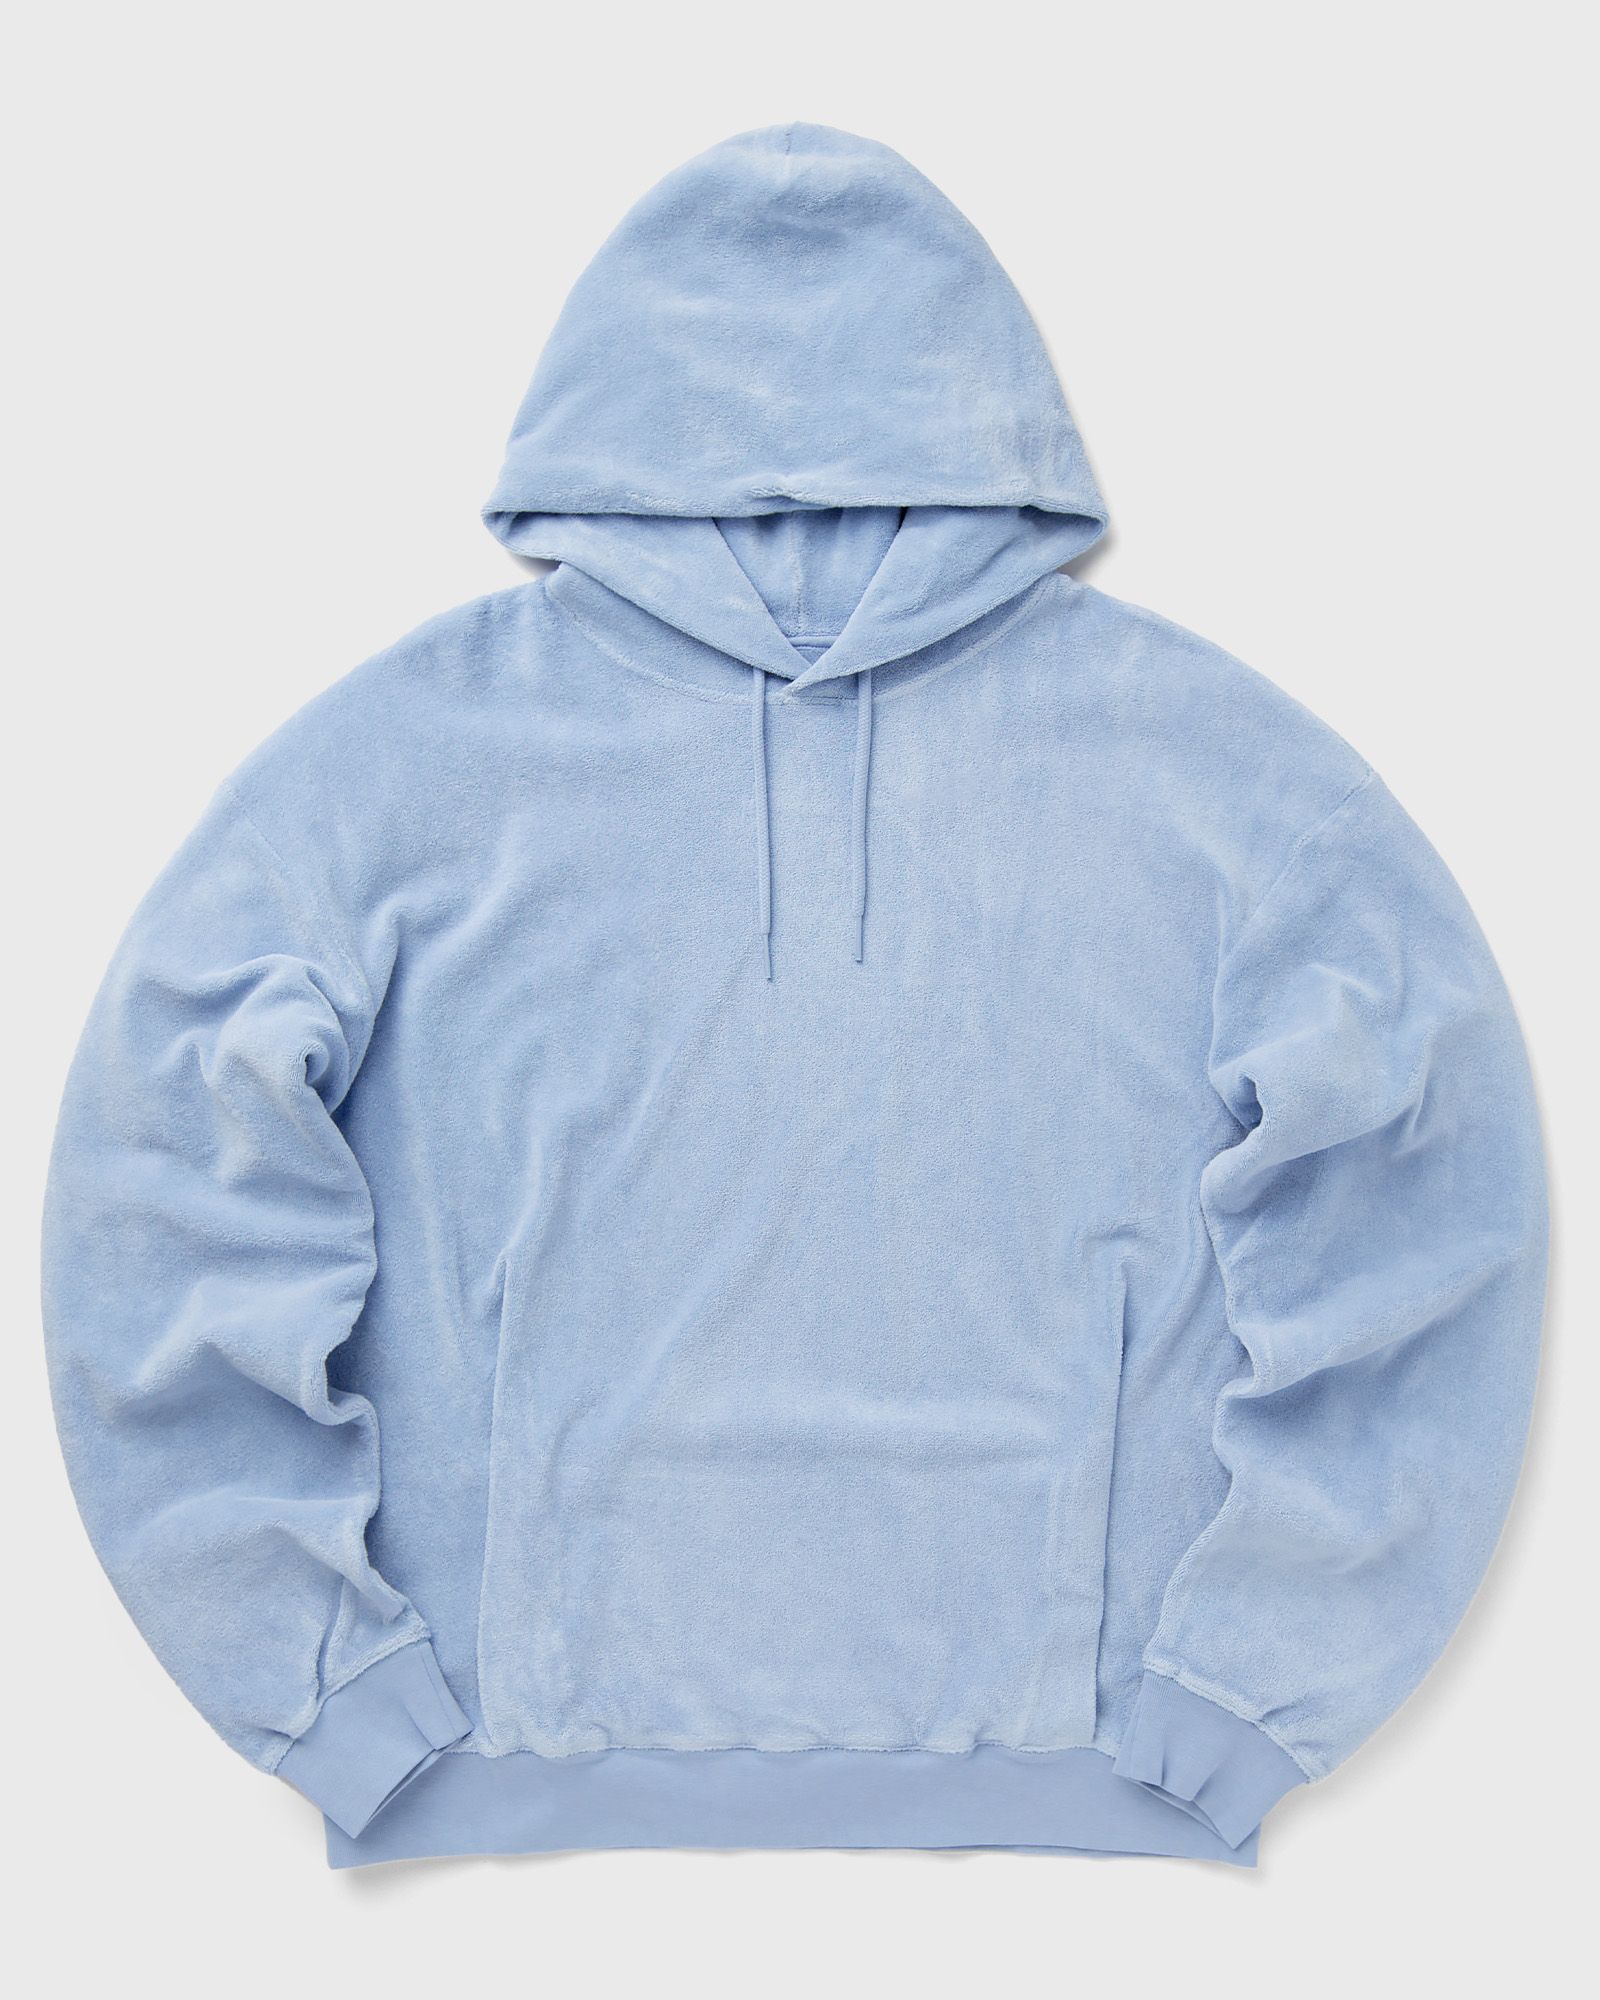 Martine Rose - classic hoodie men hoodies blue in größe:xl